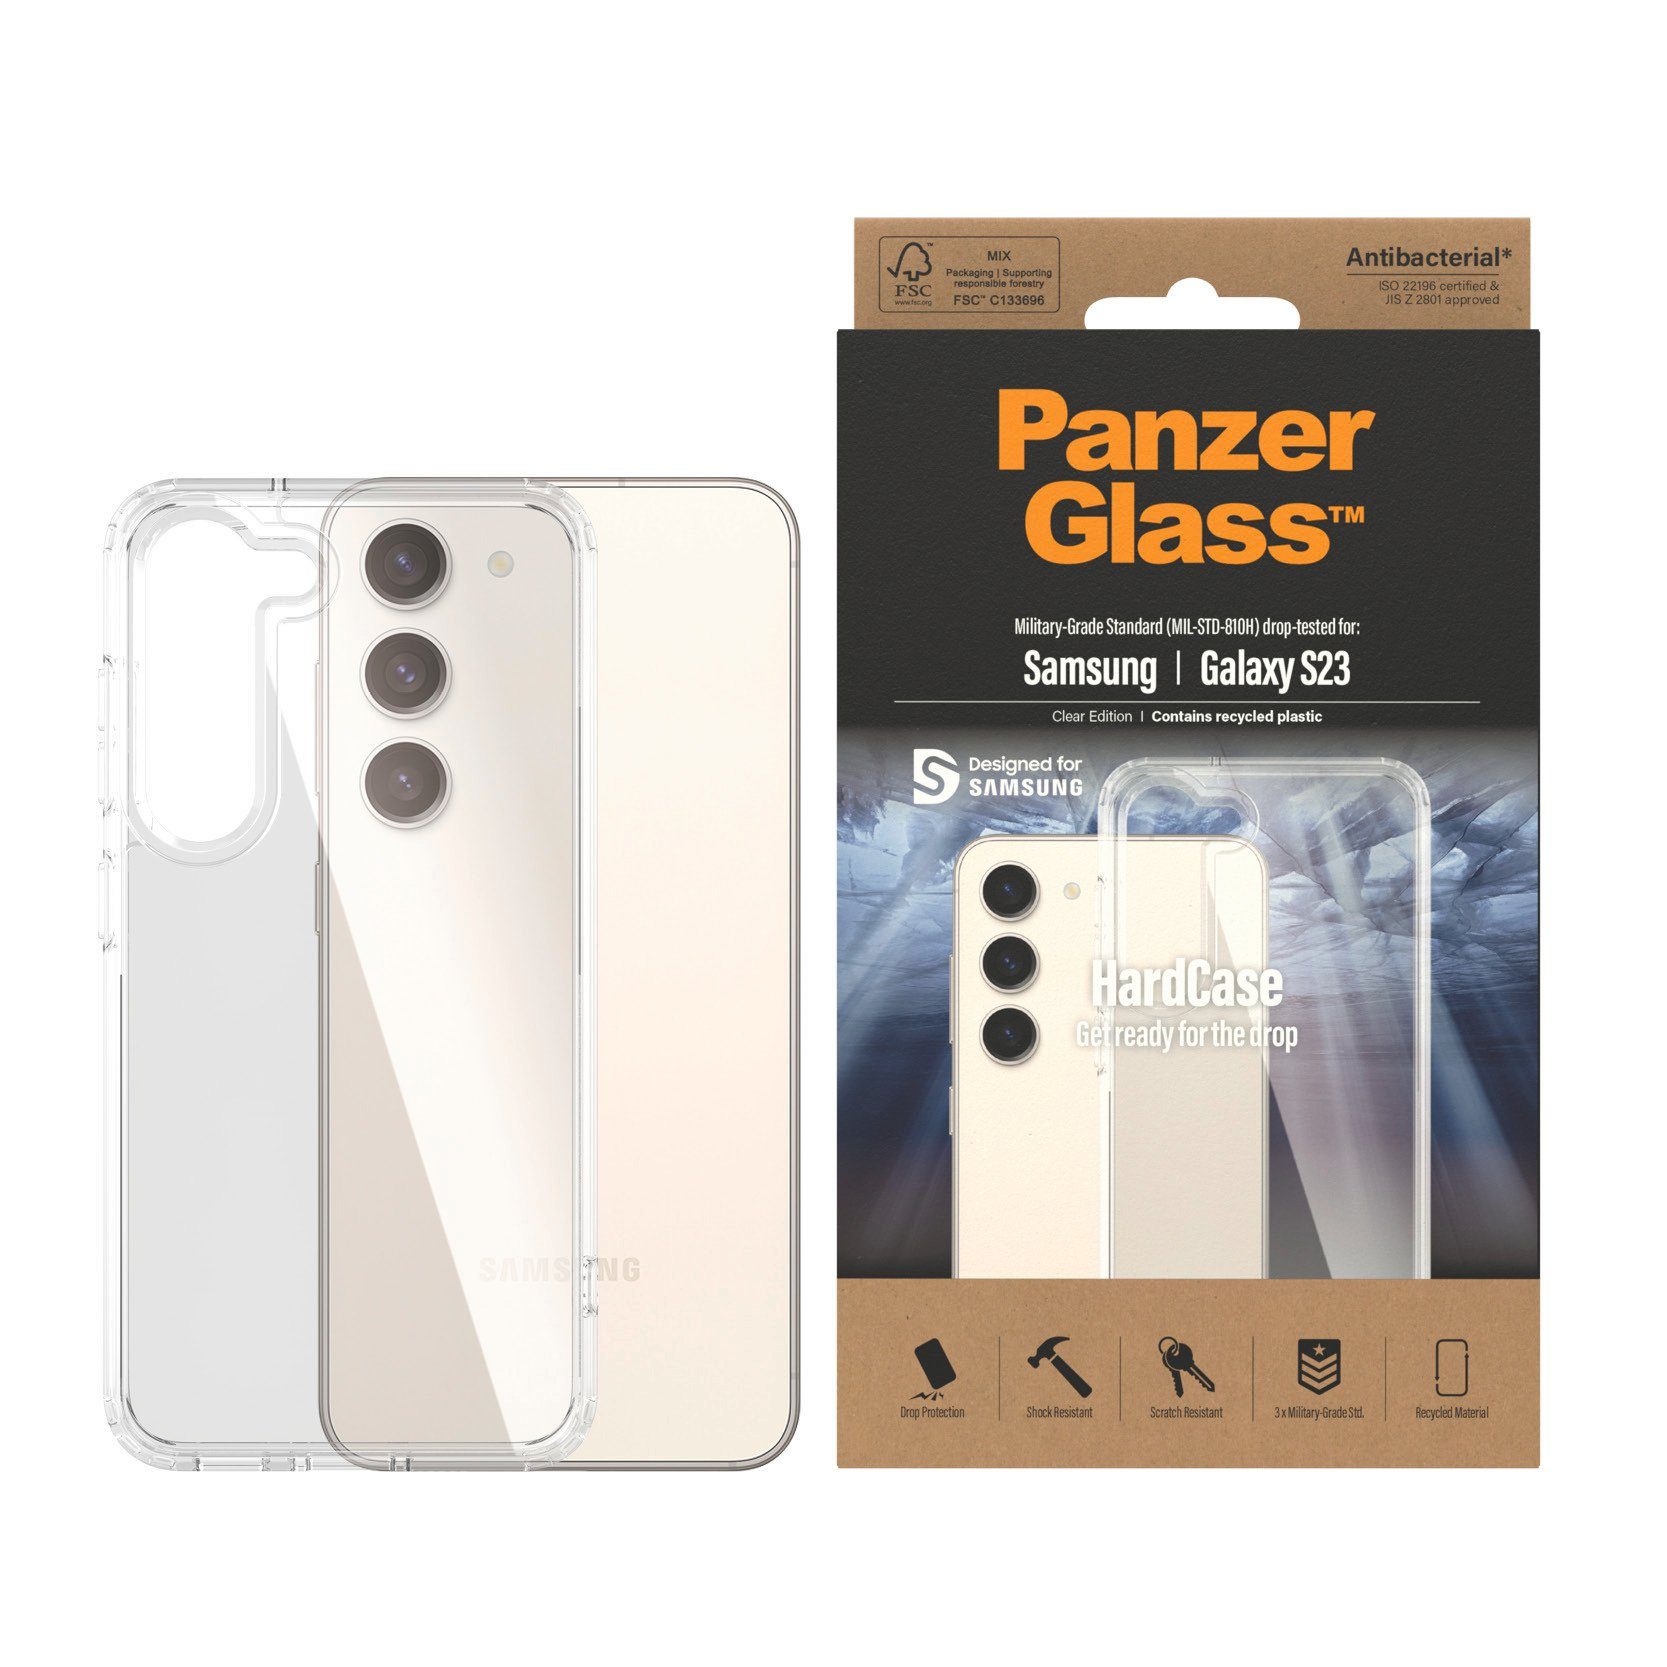 PanzerGlass Backcover Hardcase - - Samsung Galaxy S23 AB, Antibakterielle  Beschichtung (zertifiziert nach JIS 22810-ISO 22196)